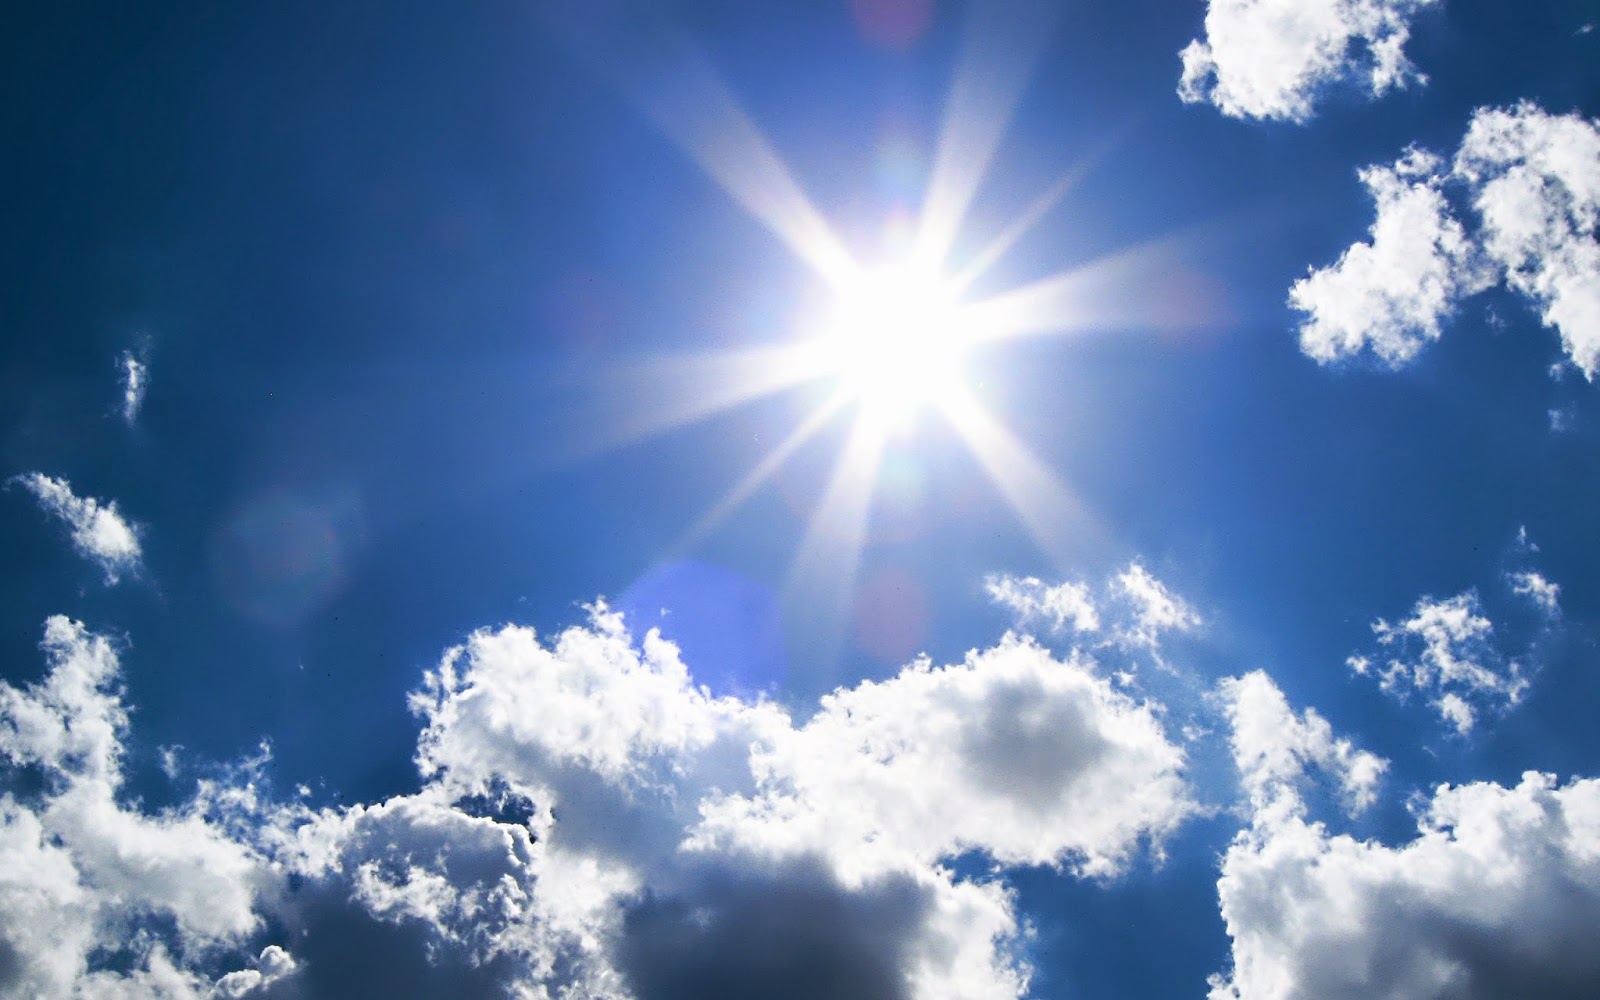 Ηλιοφάνεια με μικρή άνοδο της θερμοκρασίας ο καιρός τη Δευτέρα- Δείτε αναλυτικά την πρόγνωση